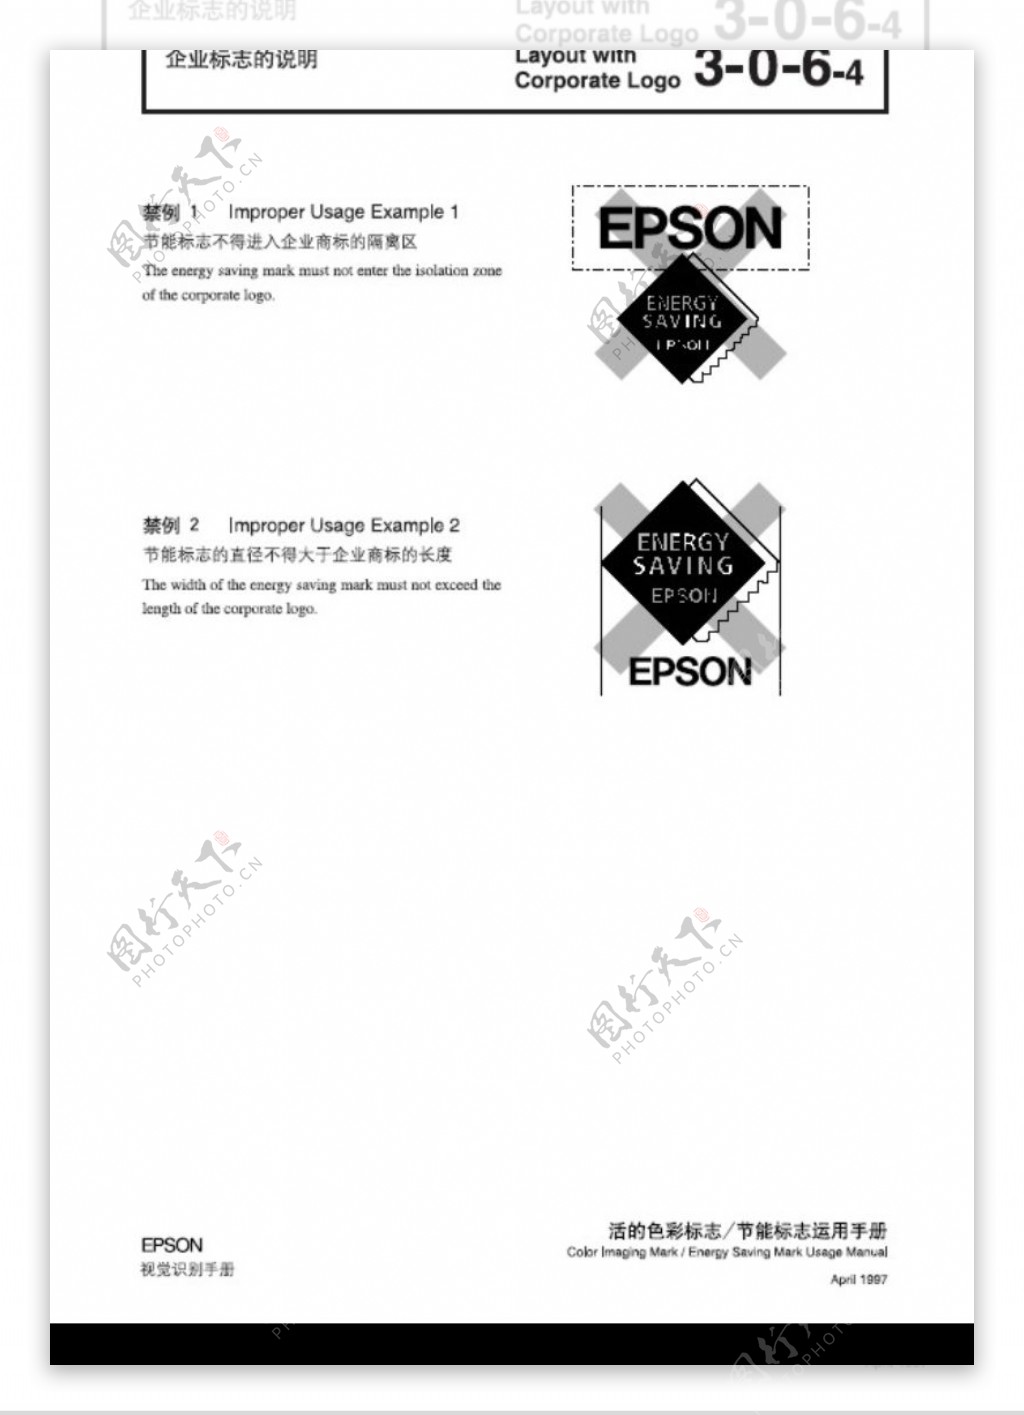 EPSON0035